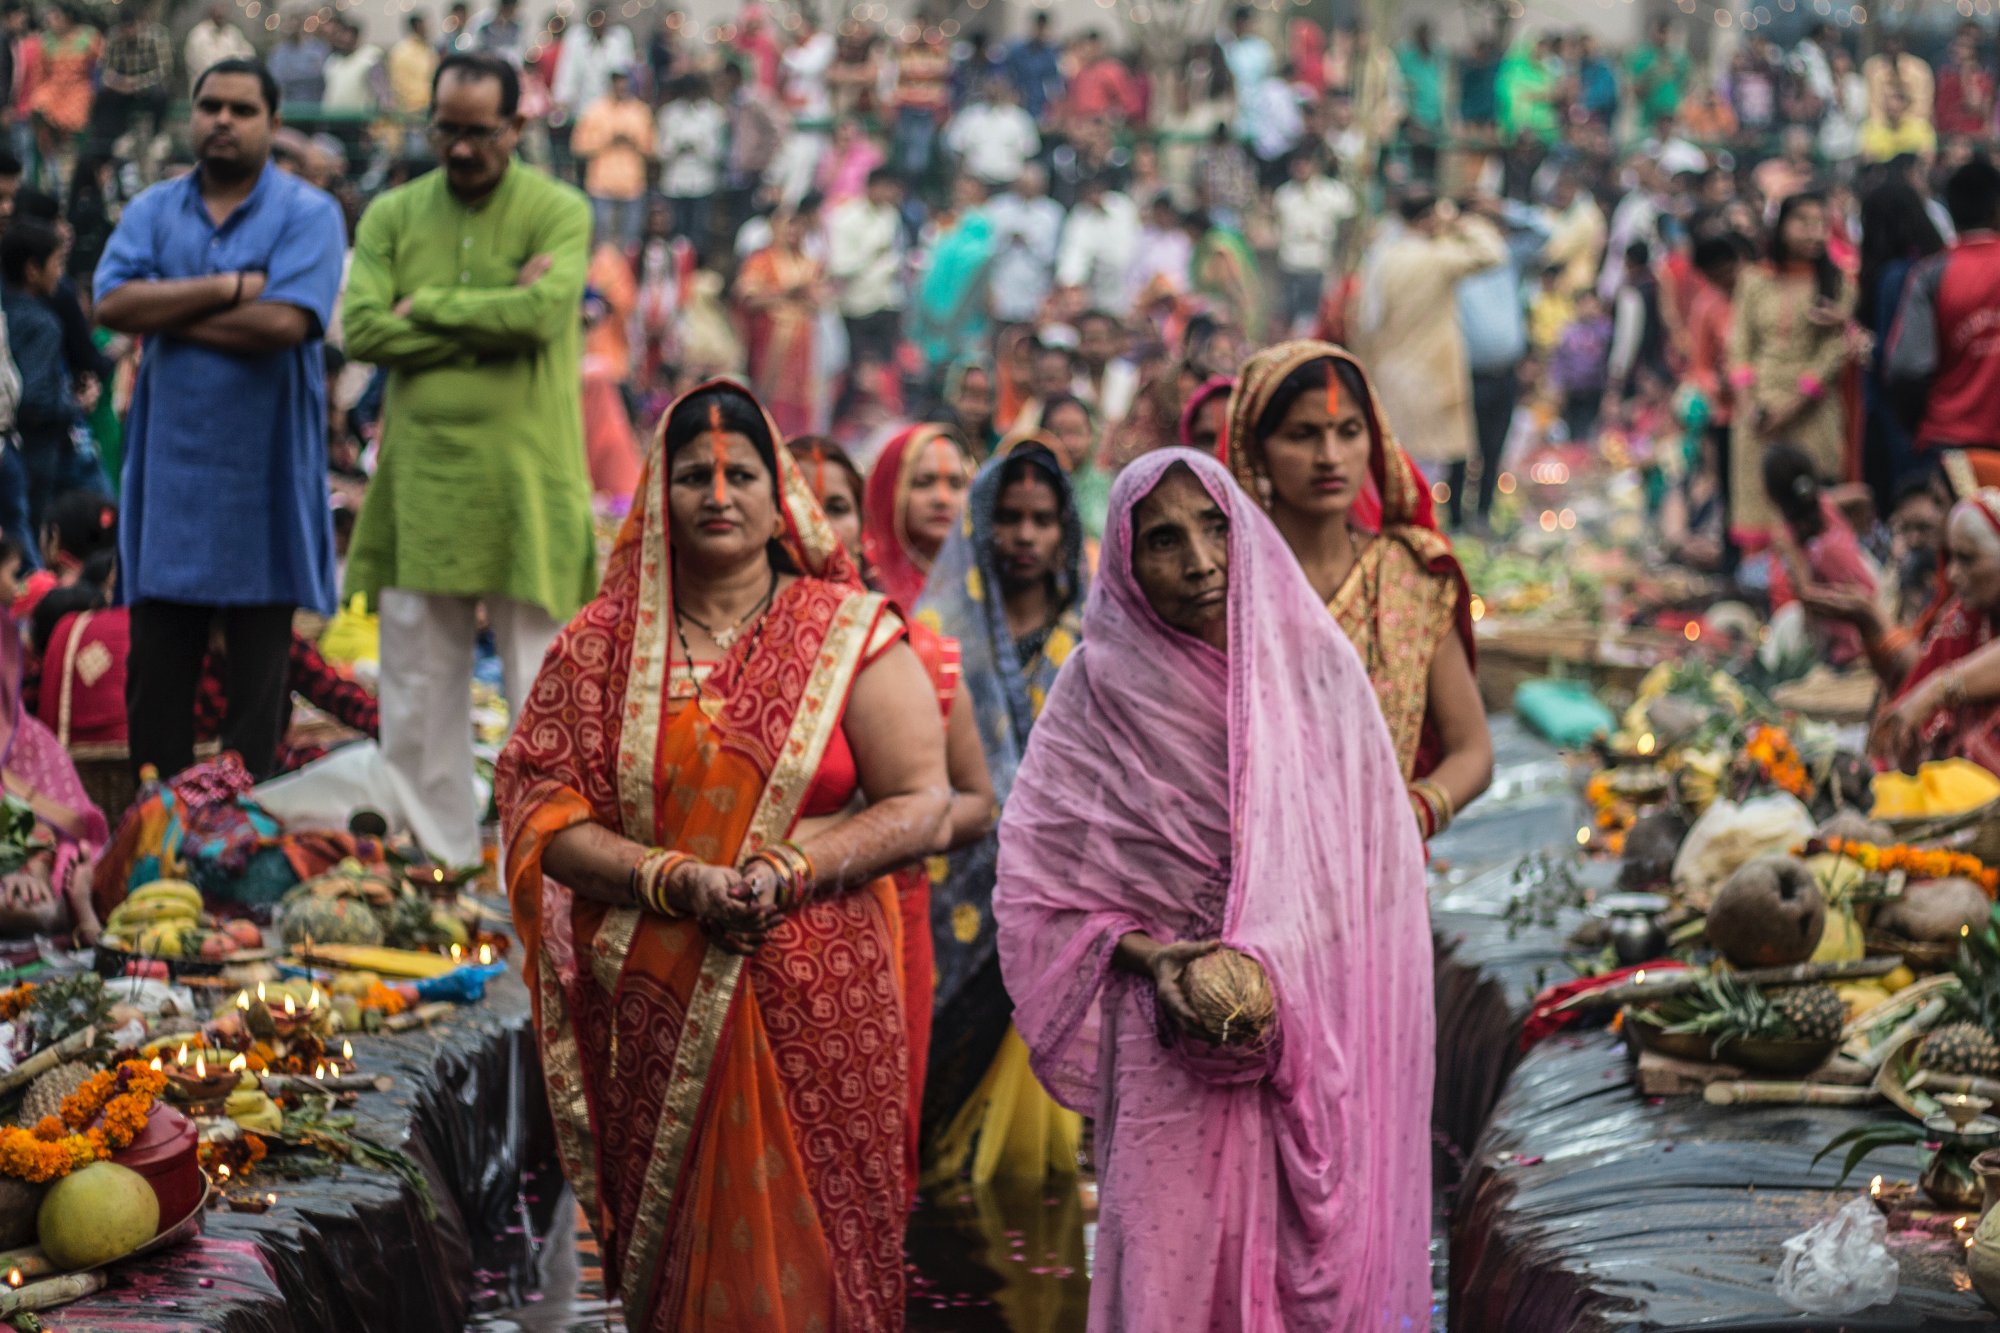 Ινδία: Το 1/3 των μελών του κοινοβουλίου θα είναι αποκλειστικά γυναίκες – Μία αλλαγή που θα πάρει καιρό